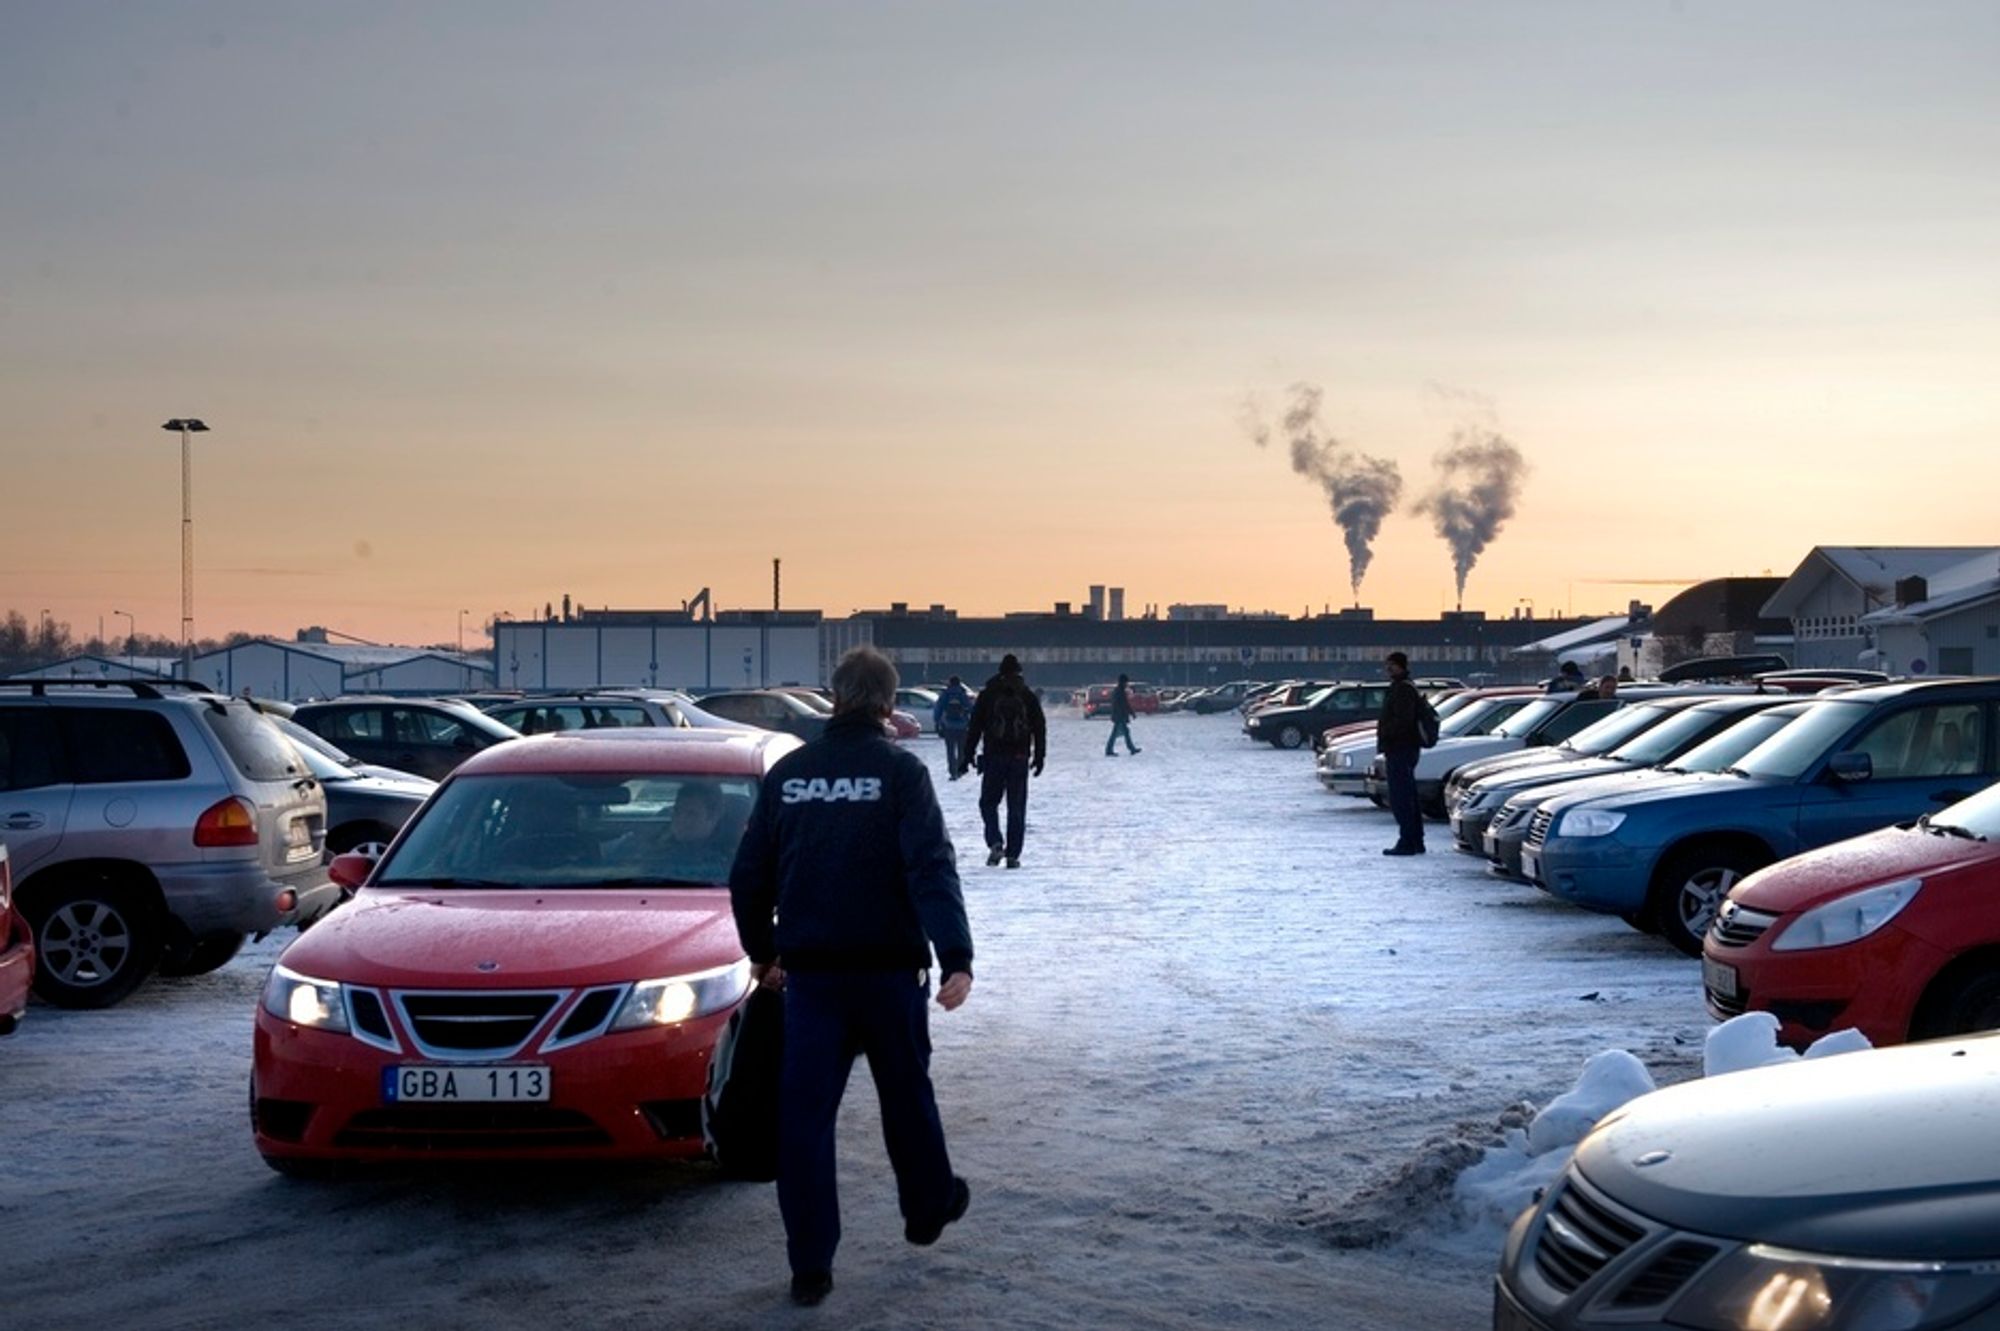 Ansatte ved Saab-anlegget i Trollhättan gikk hjem fra jobb like kloke som da de kom. Hele dagen hadde ryktene rast om at et salg til nederlandske Spyker var like om hjørnet, men mandag ettermiddag rådet igjen usikkerheten.